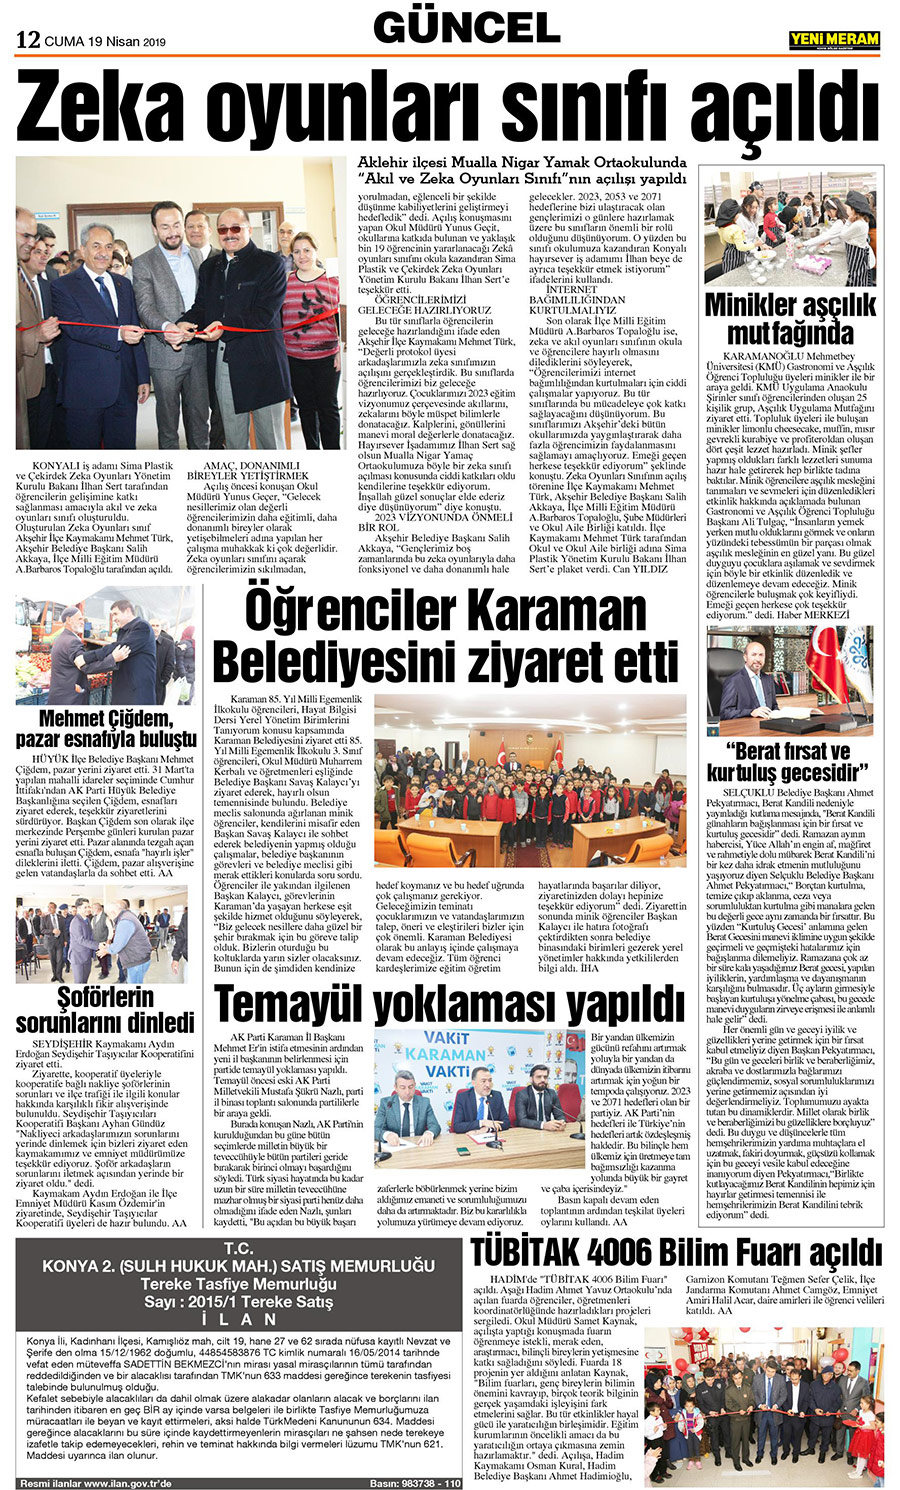 19 Nisan 2019 Yeni Meram Gazetesi